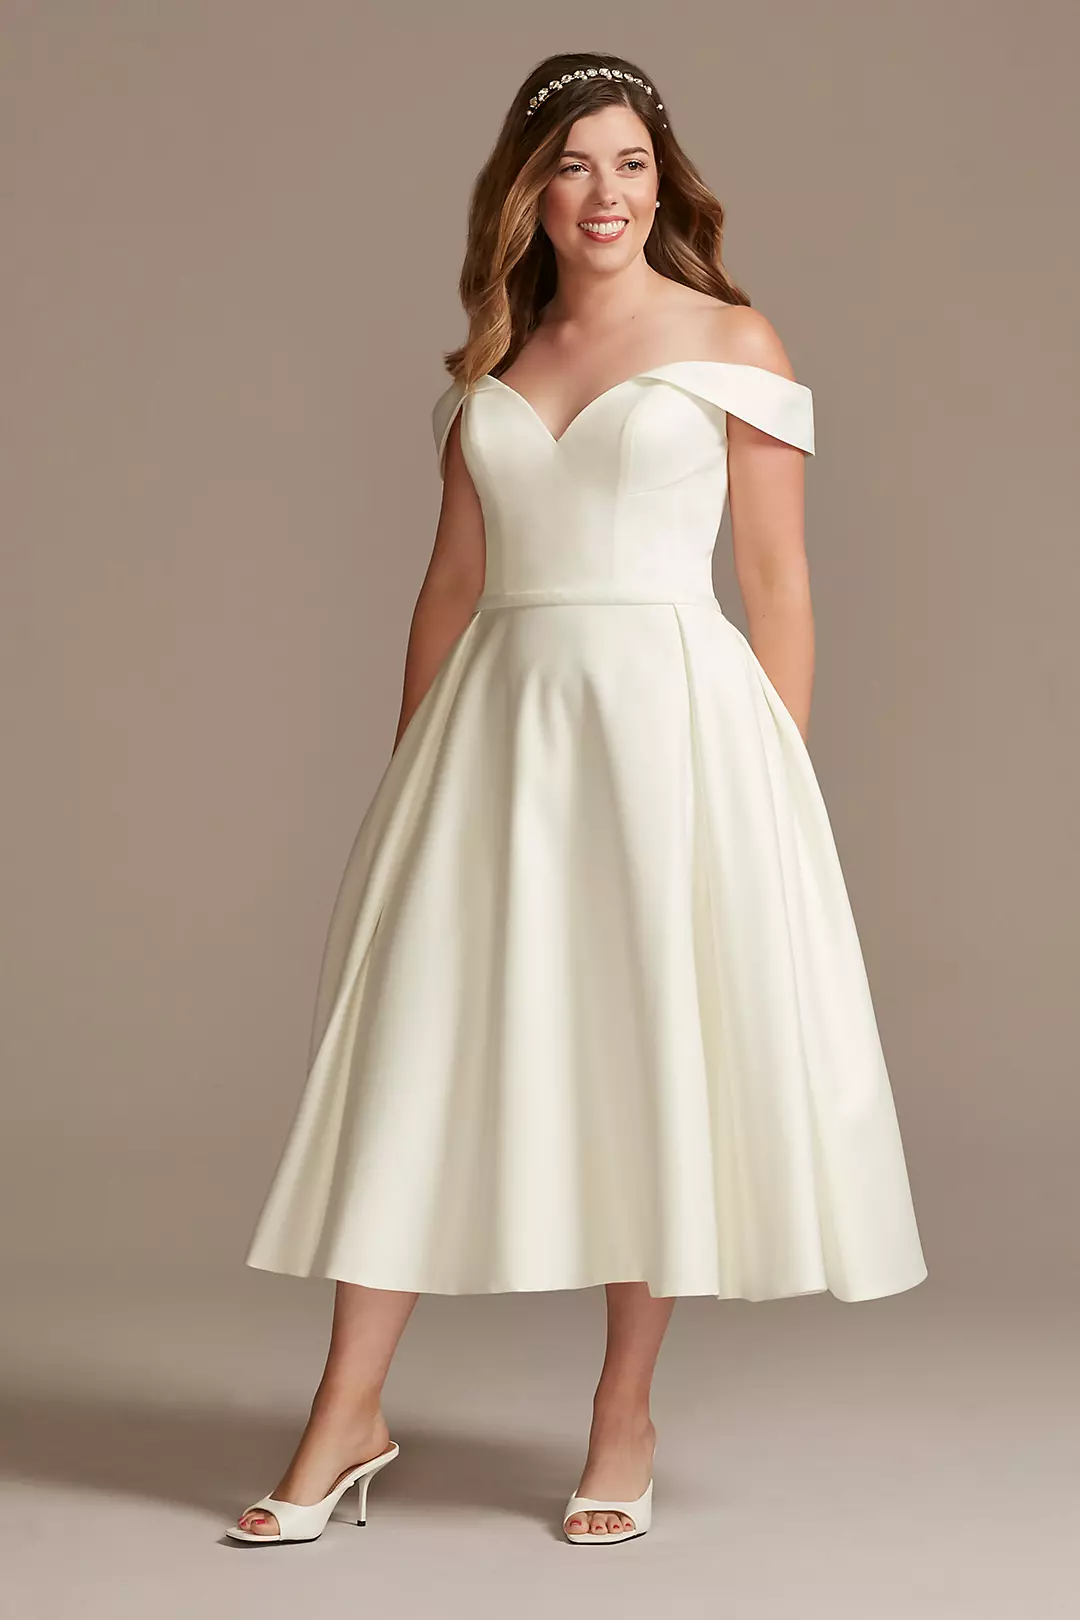 Off the Shoulder Satin Tea-Length Wedding Dress Image